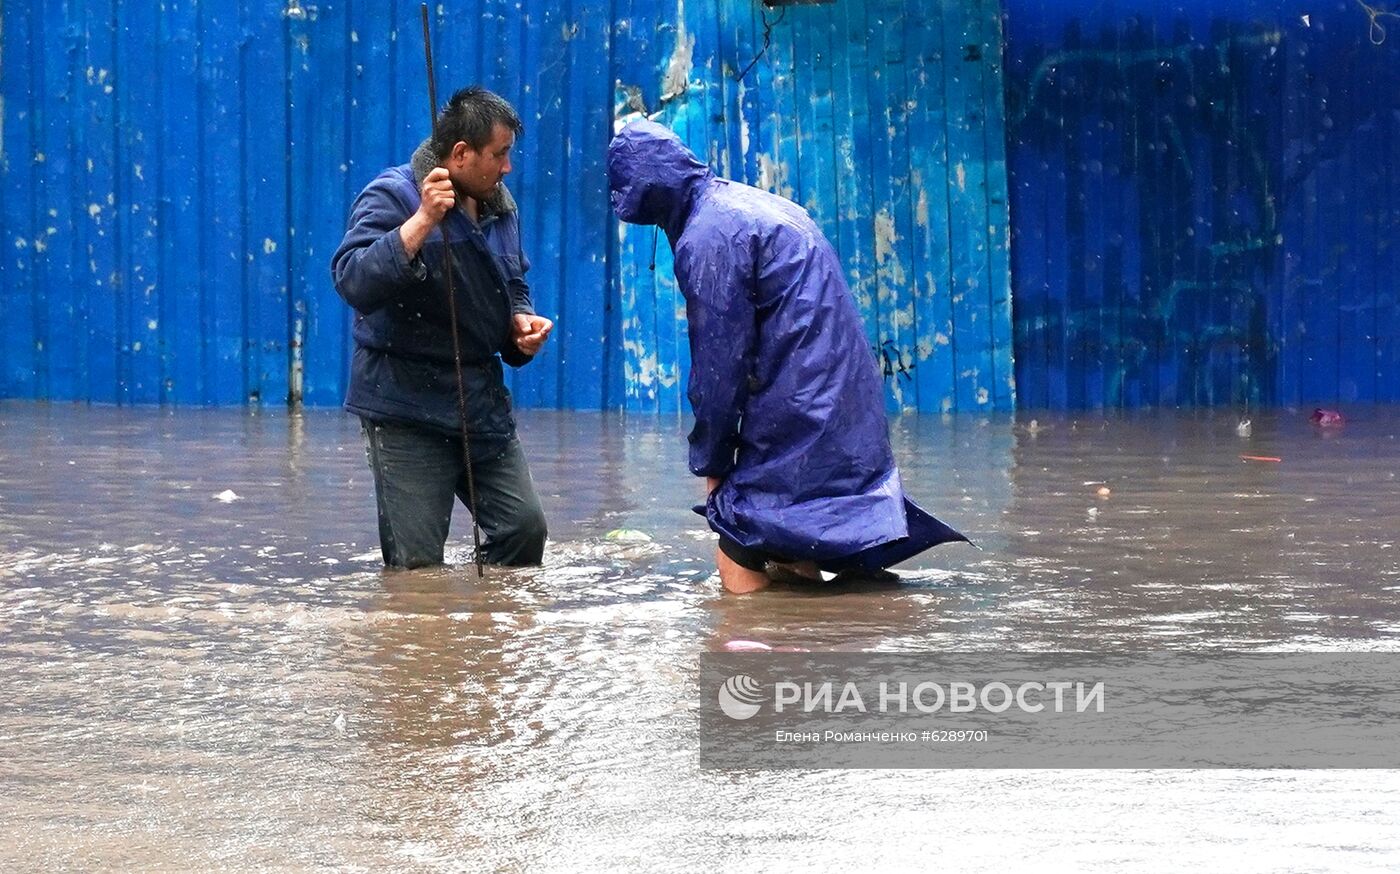 Ливень в Ростове-на-Дону вызвал сильные подтопления